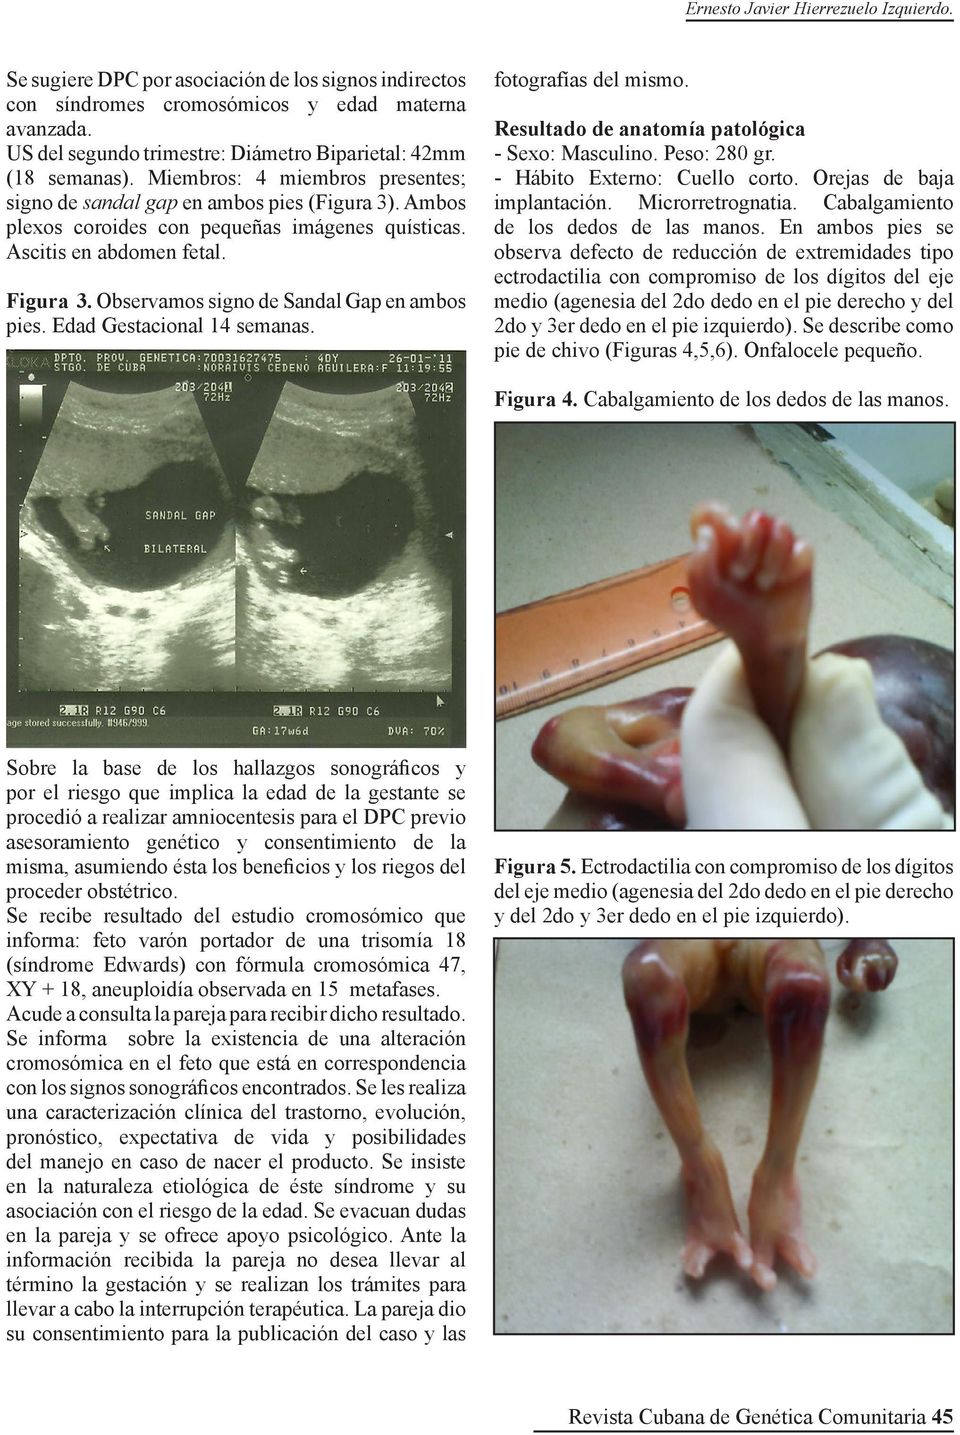 Ascitis en abdomen fetal. Figura 3. Observamos signo de Sandal Gap en ambos pies. Edad Gestacional 14 semanas. fotografías del mismo. Resultado de anatomía patológica - Sexo: Masculino. Peso: 280 gr.